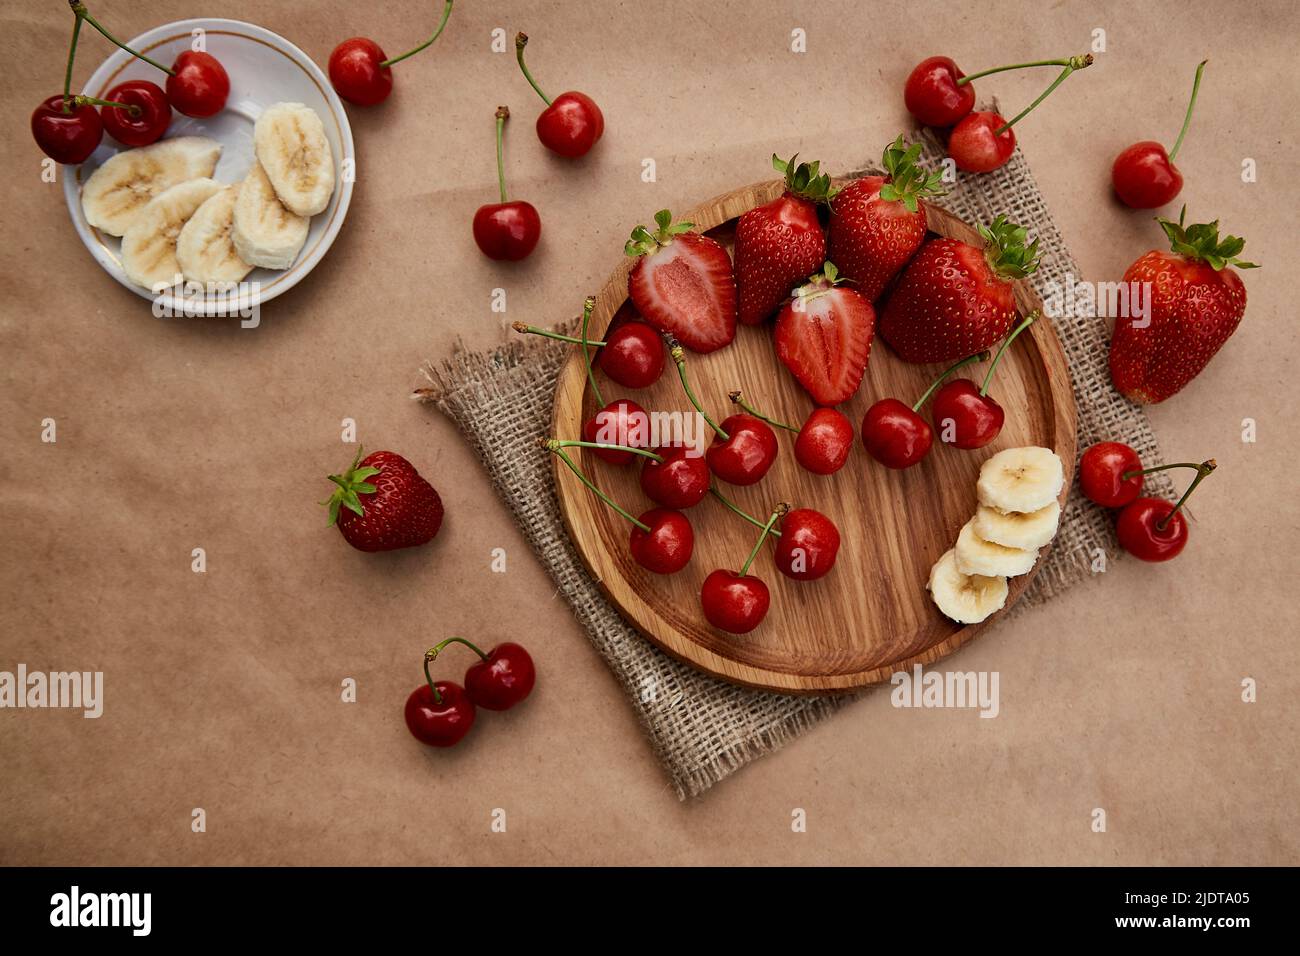 Frische Sommerfrüchte - Erdbeere, Banane und Kirsche flach legen. Sommervitamine, gesunde Ernährung. Stockfoto